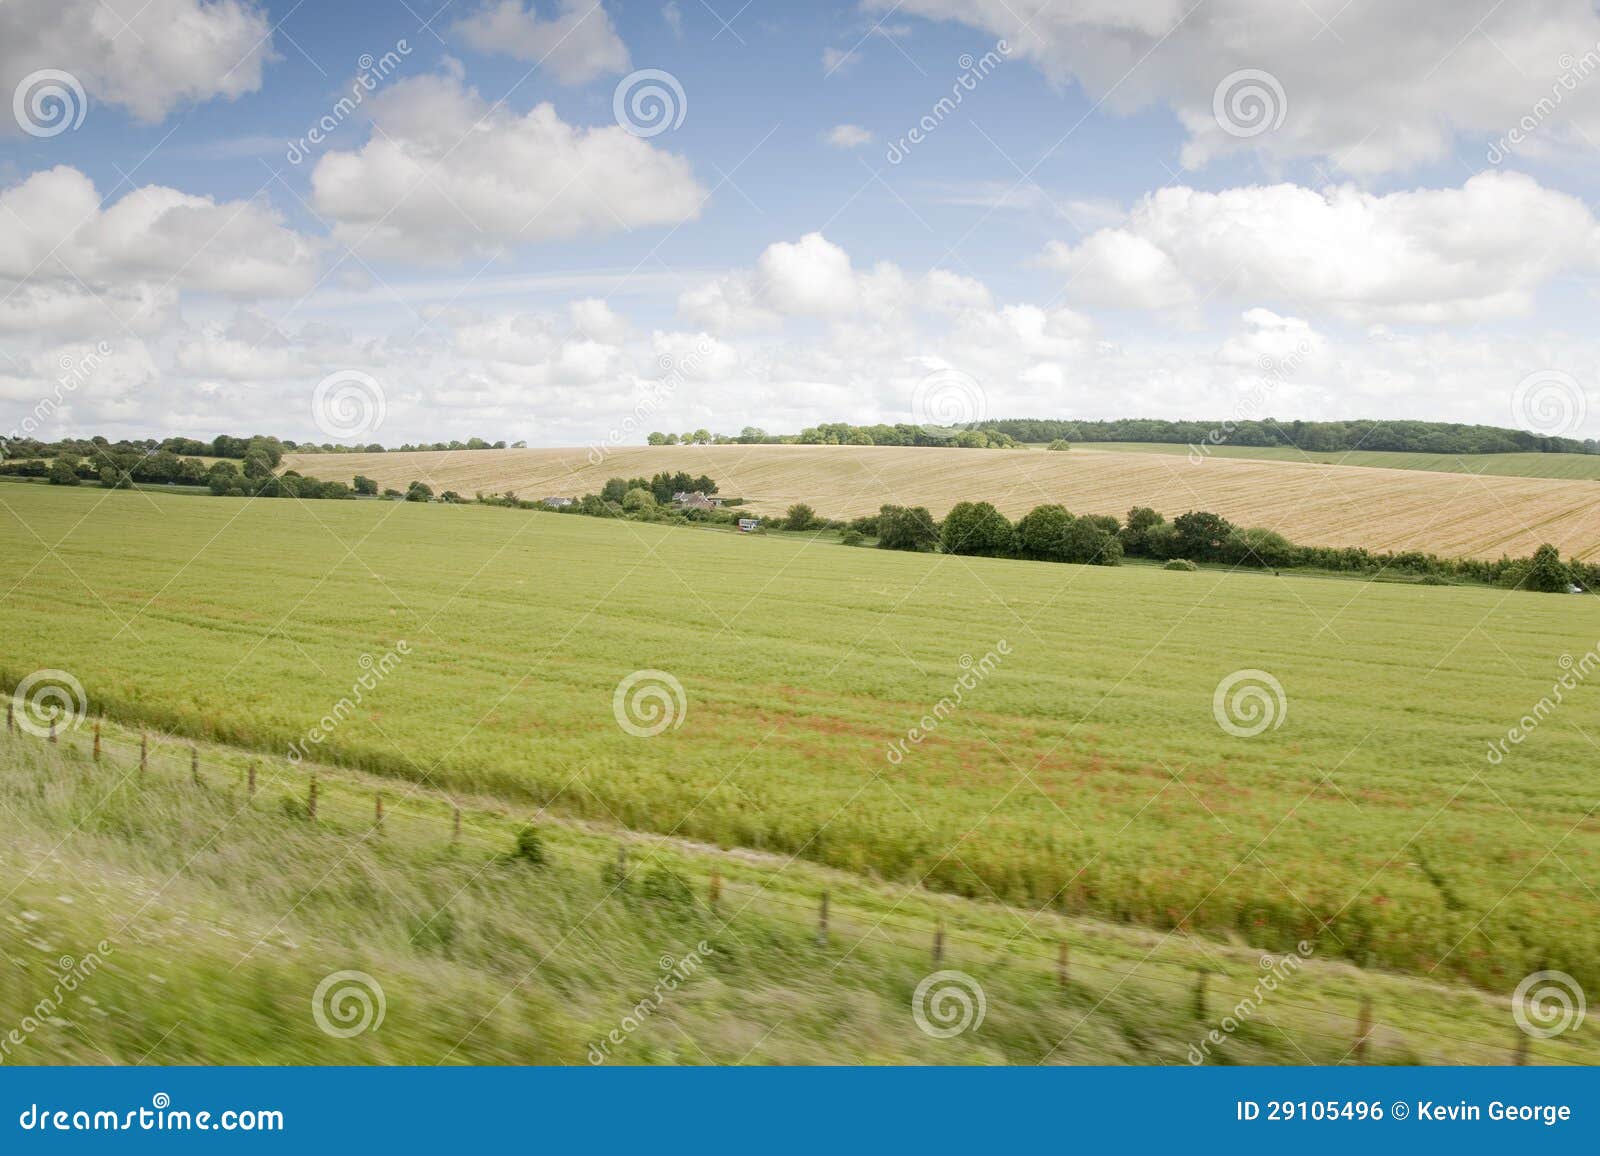 Hampshire Landscape in England, UK.